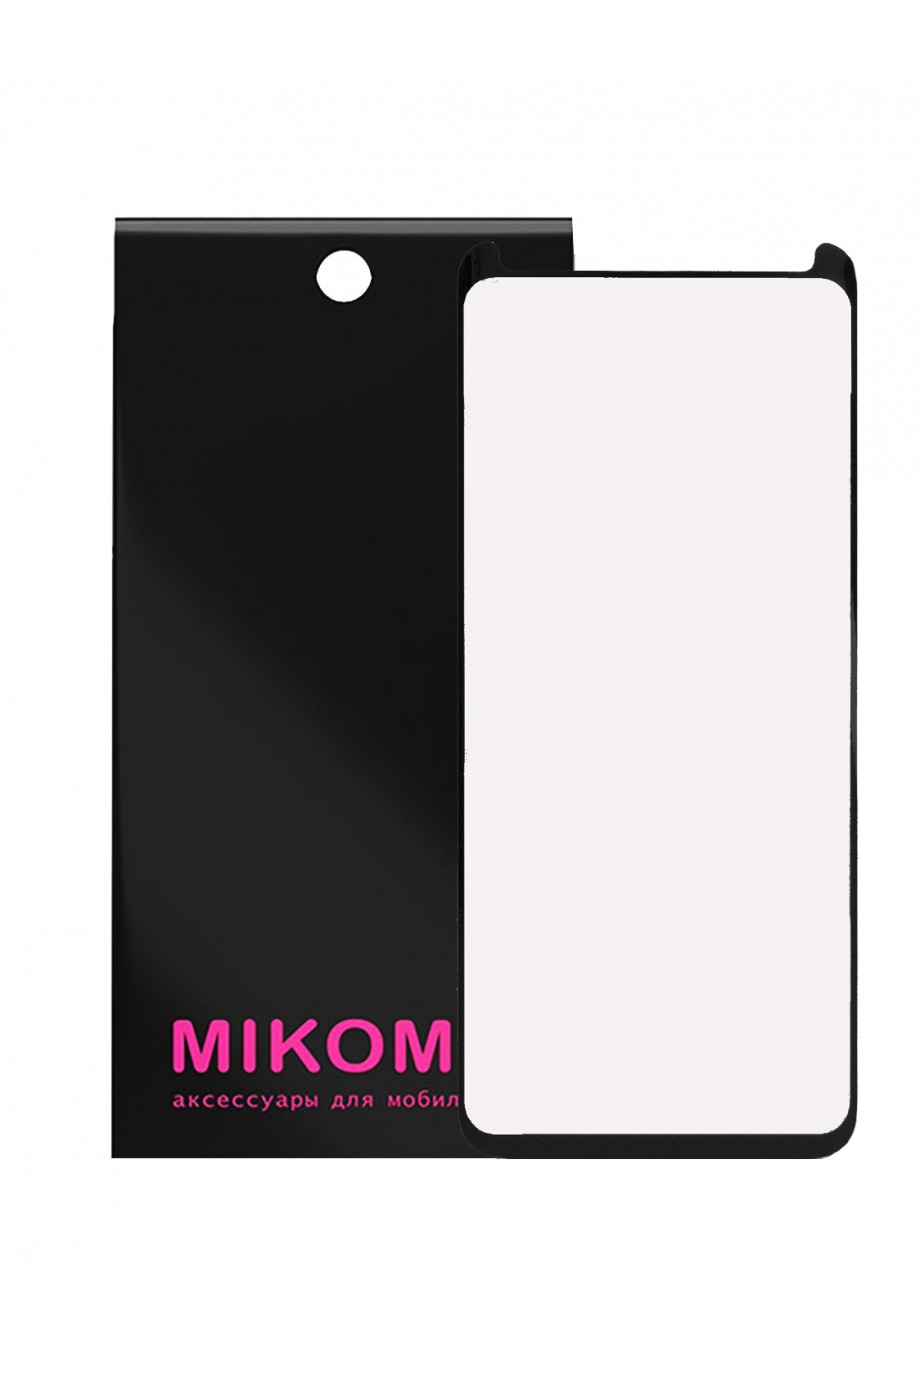 Защитное стекло 3D Mikomo для Samsung Galaxy S9, черная рамка, полный клей